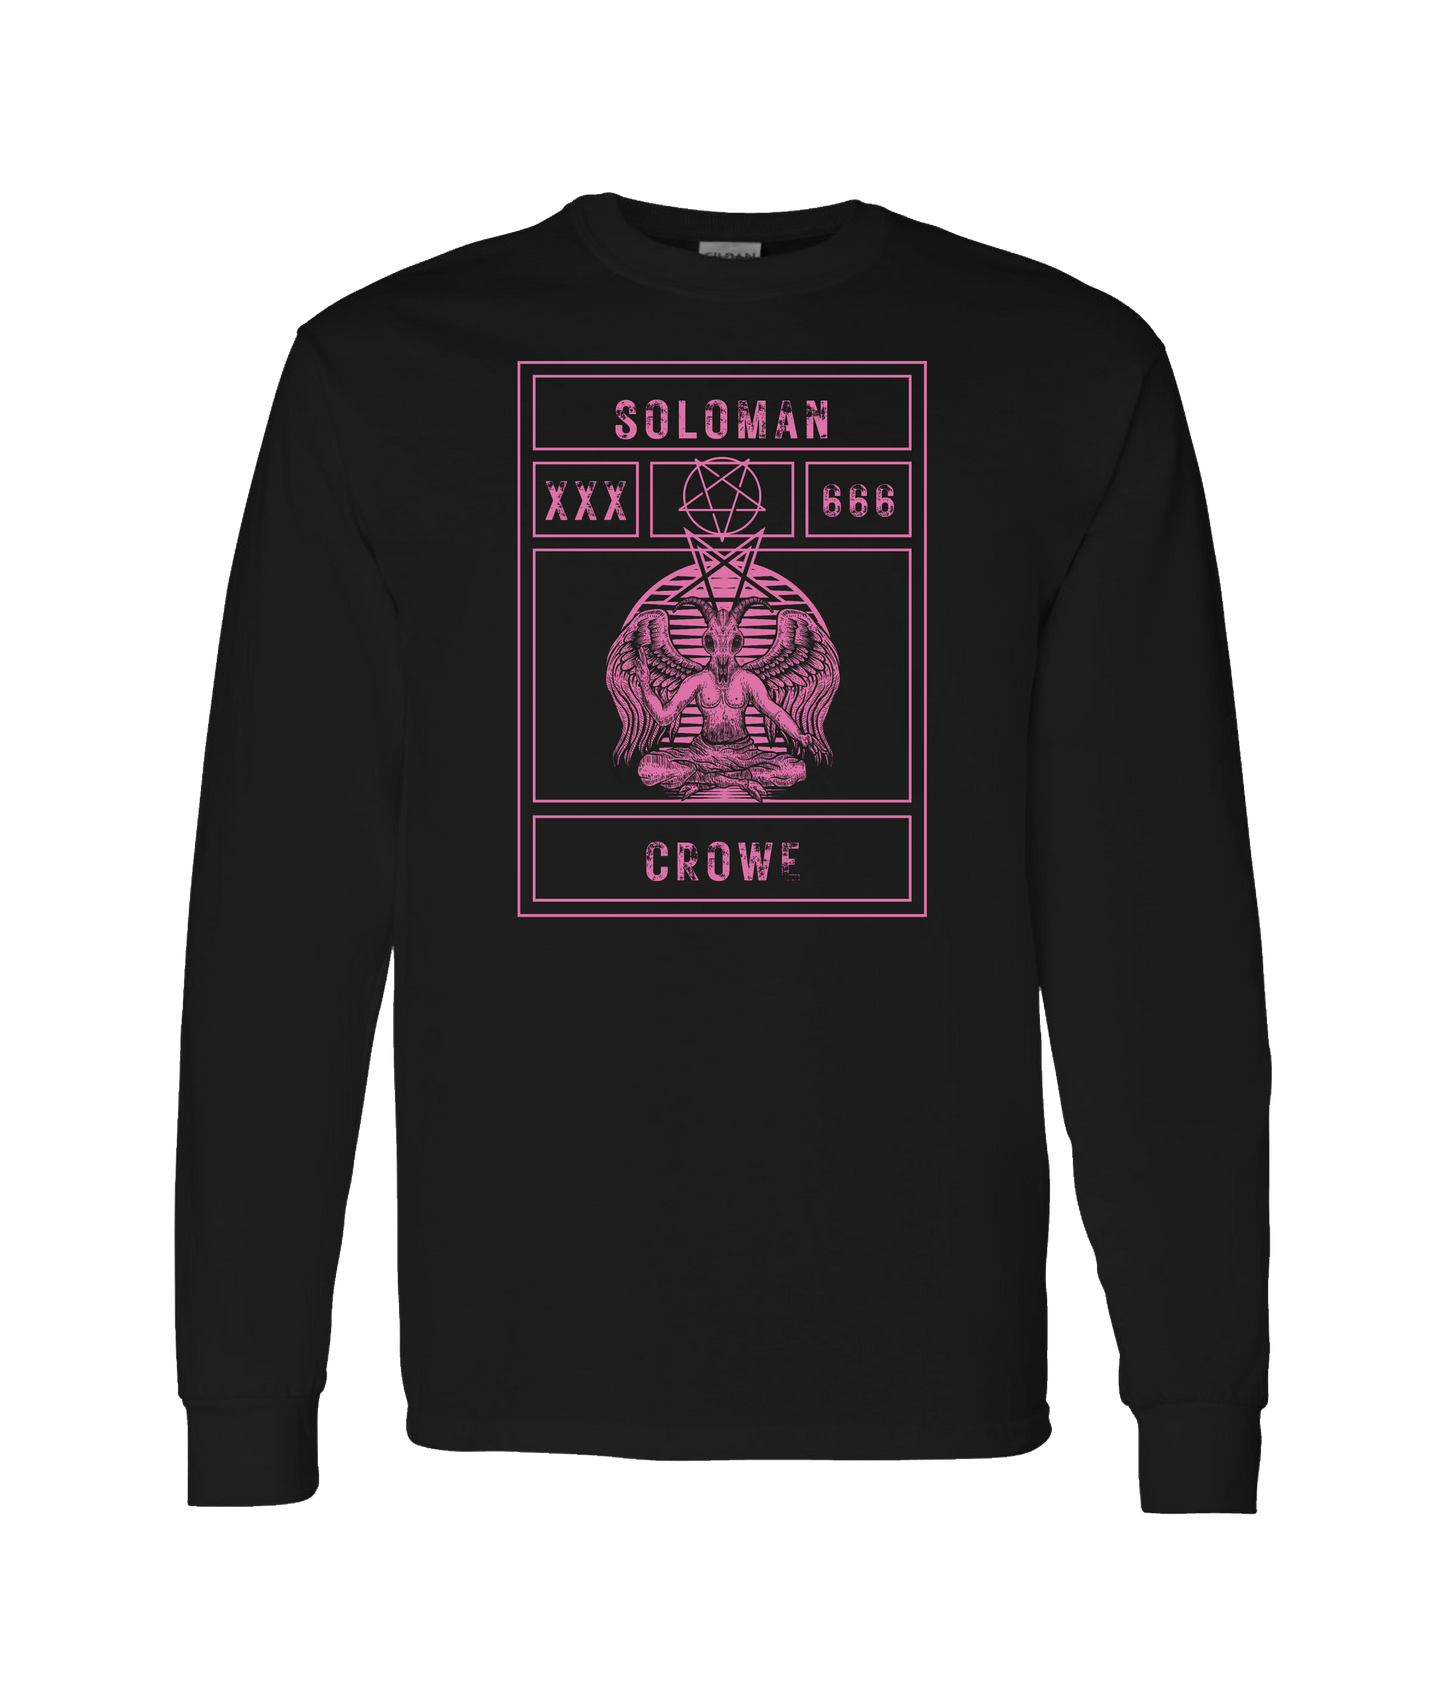 Soloman Crowe - XXX666 - Black Long Sleeve T